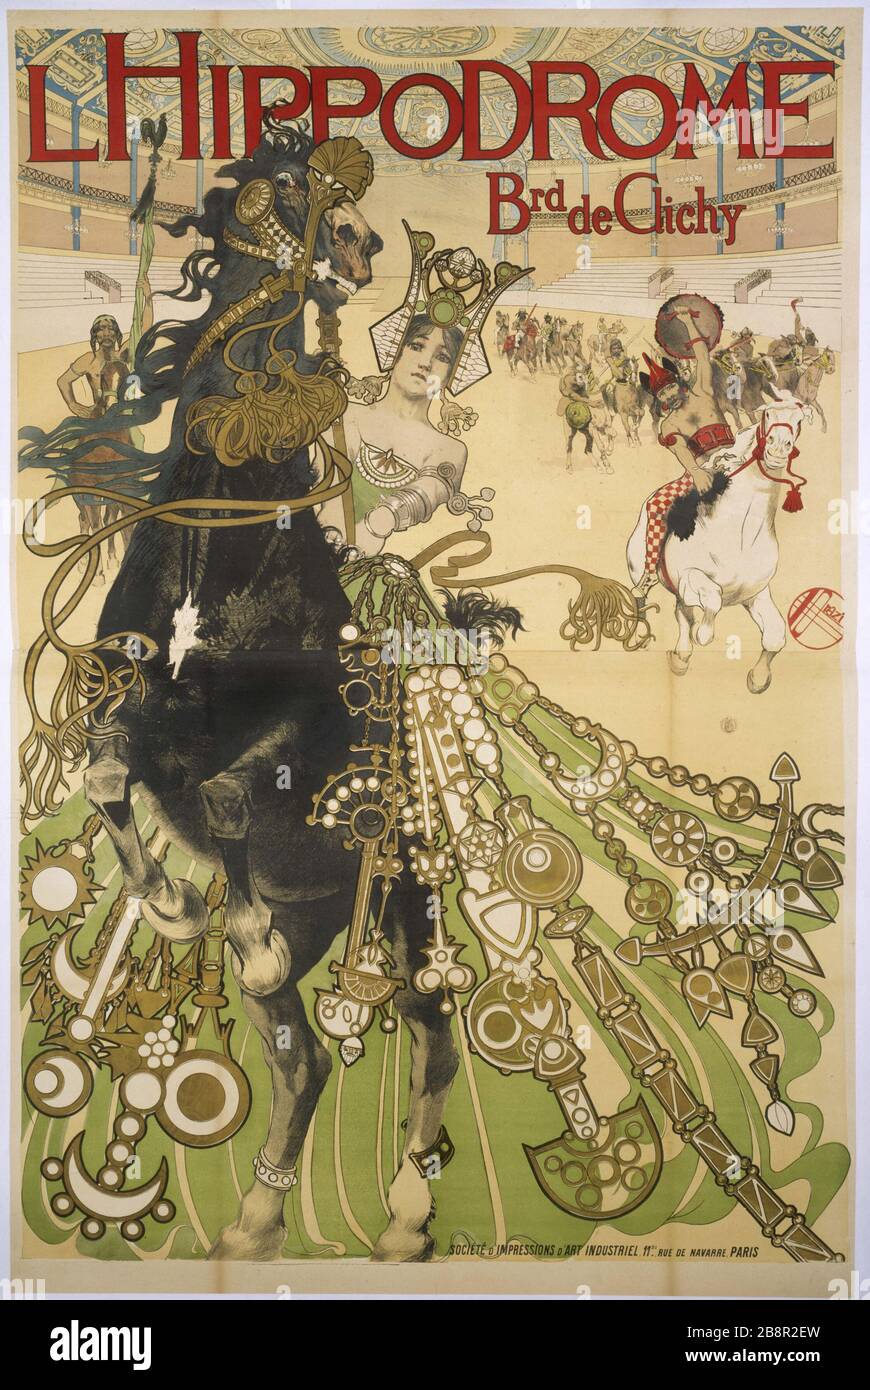 Hippodrome Manuel Orazi (1860-1934). 'L'Hippodrome', boulevard de Clichy, affiche. Paris, musée Carnavalet. Stock Photo